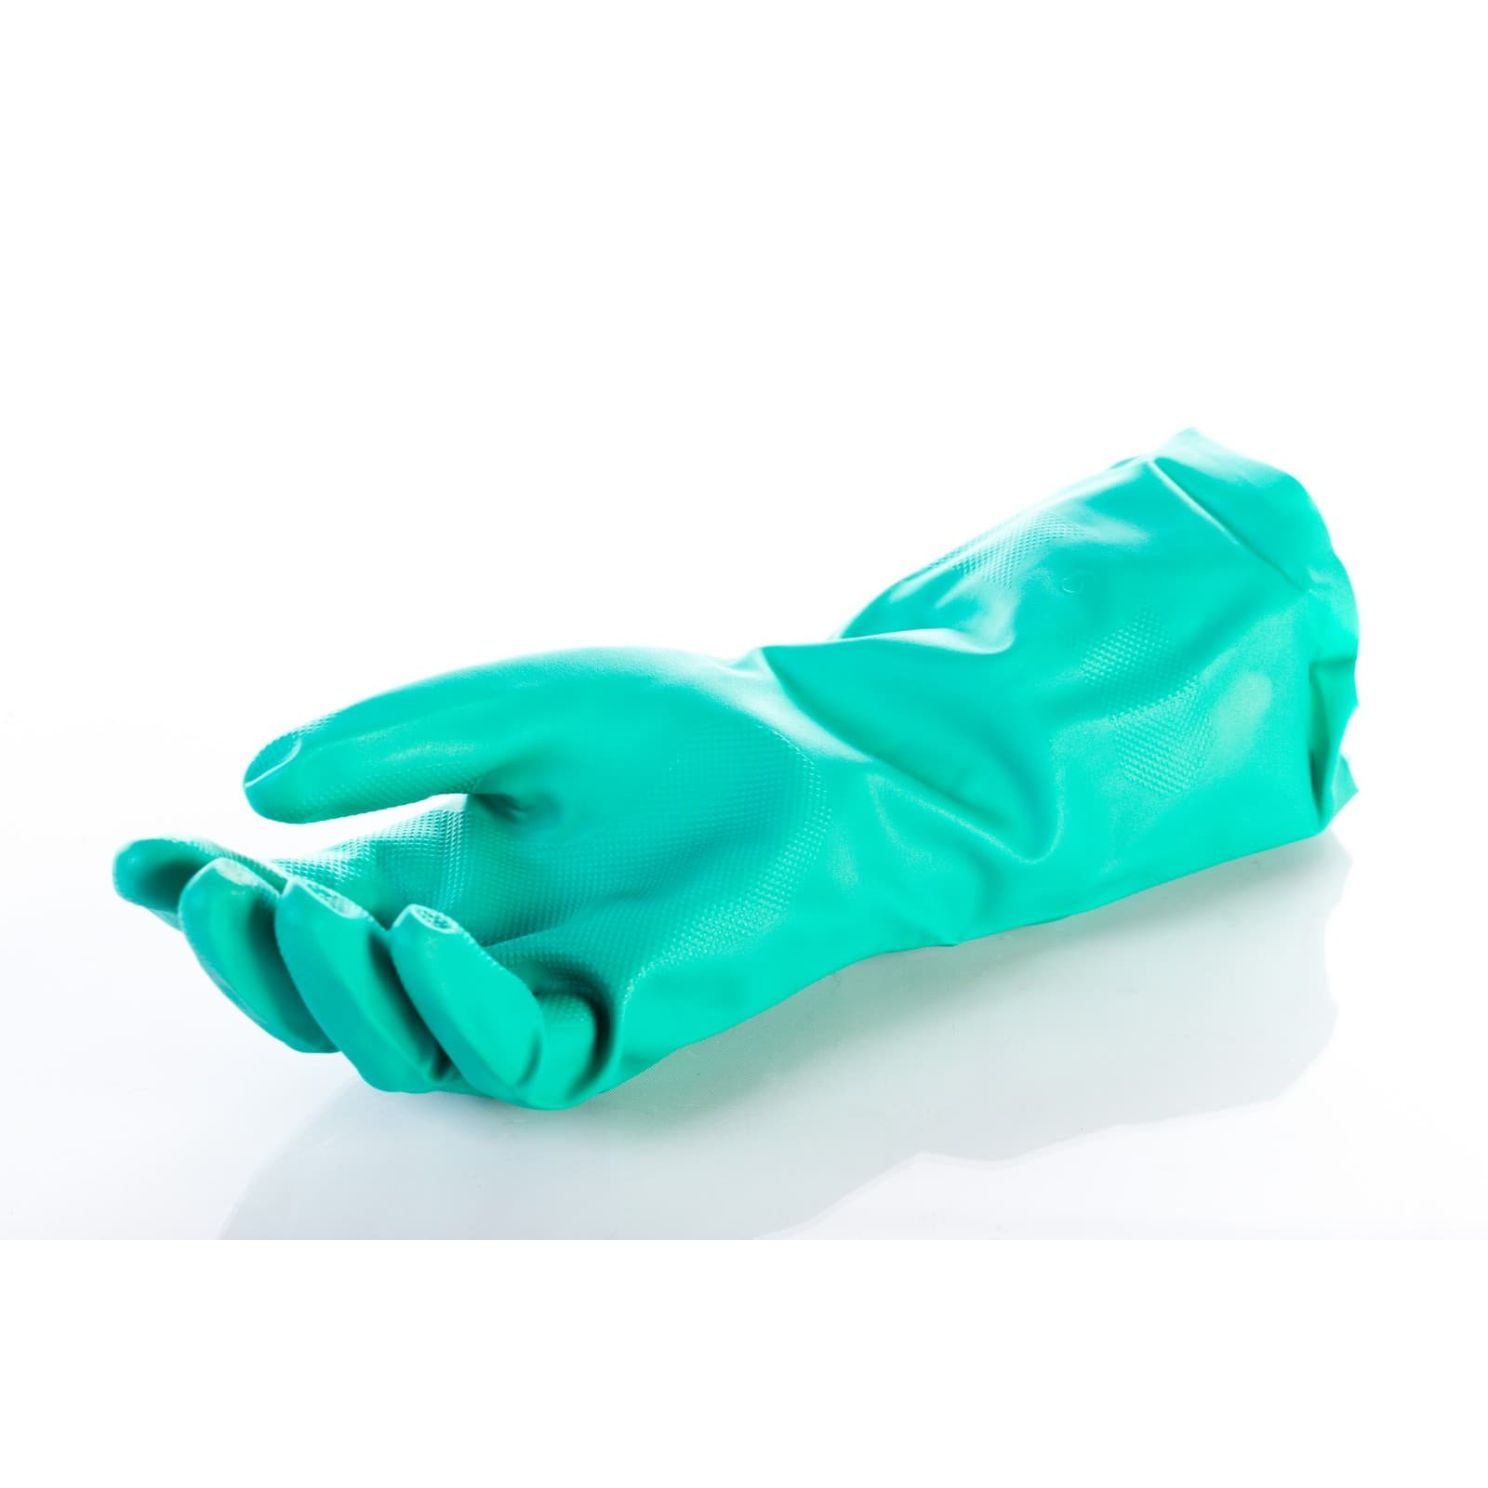 Kinco Green Nitrile Safety Gauntlet Gloves Large